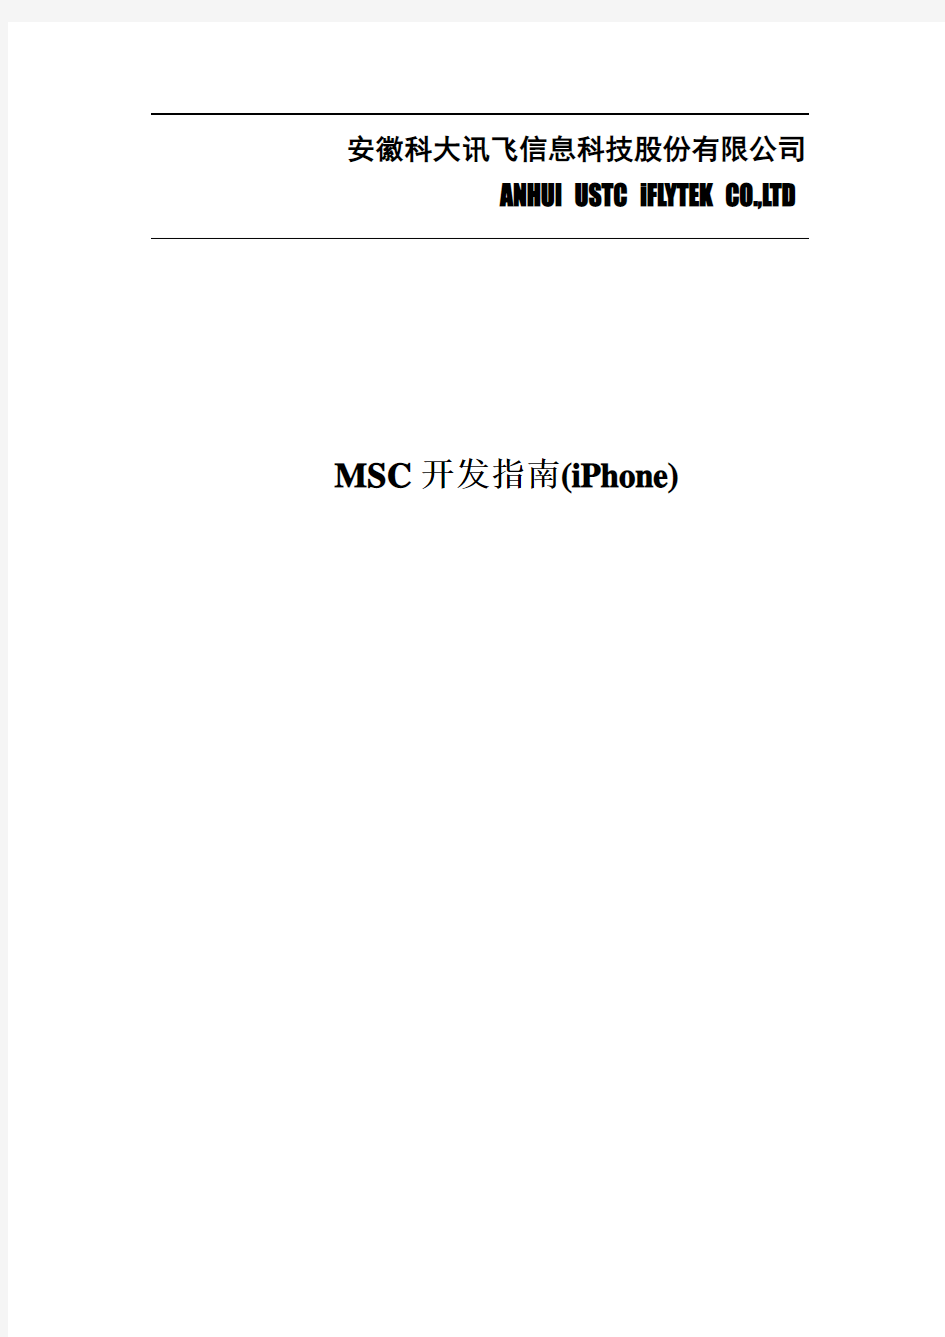 讯飞MSC开发指南_iPhone